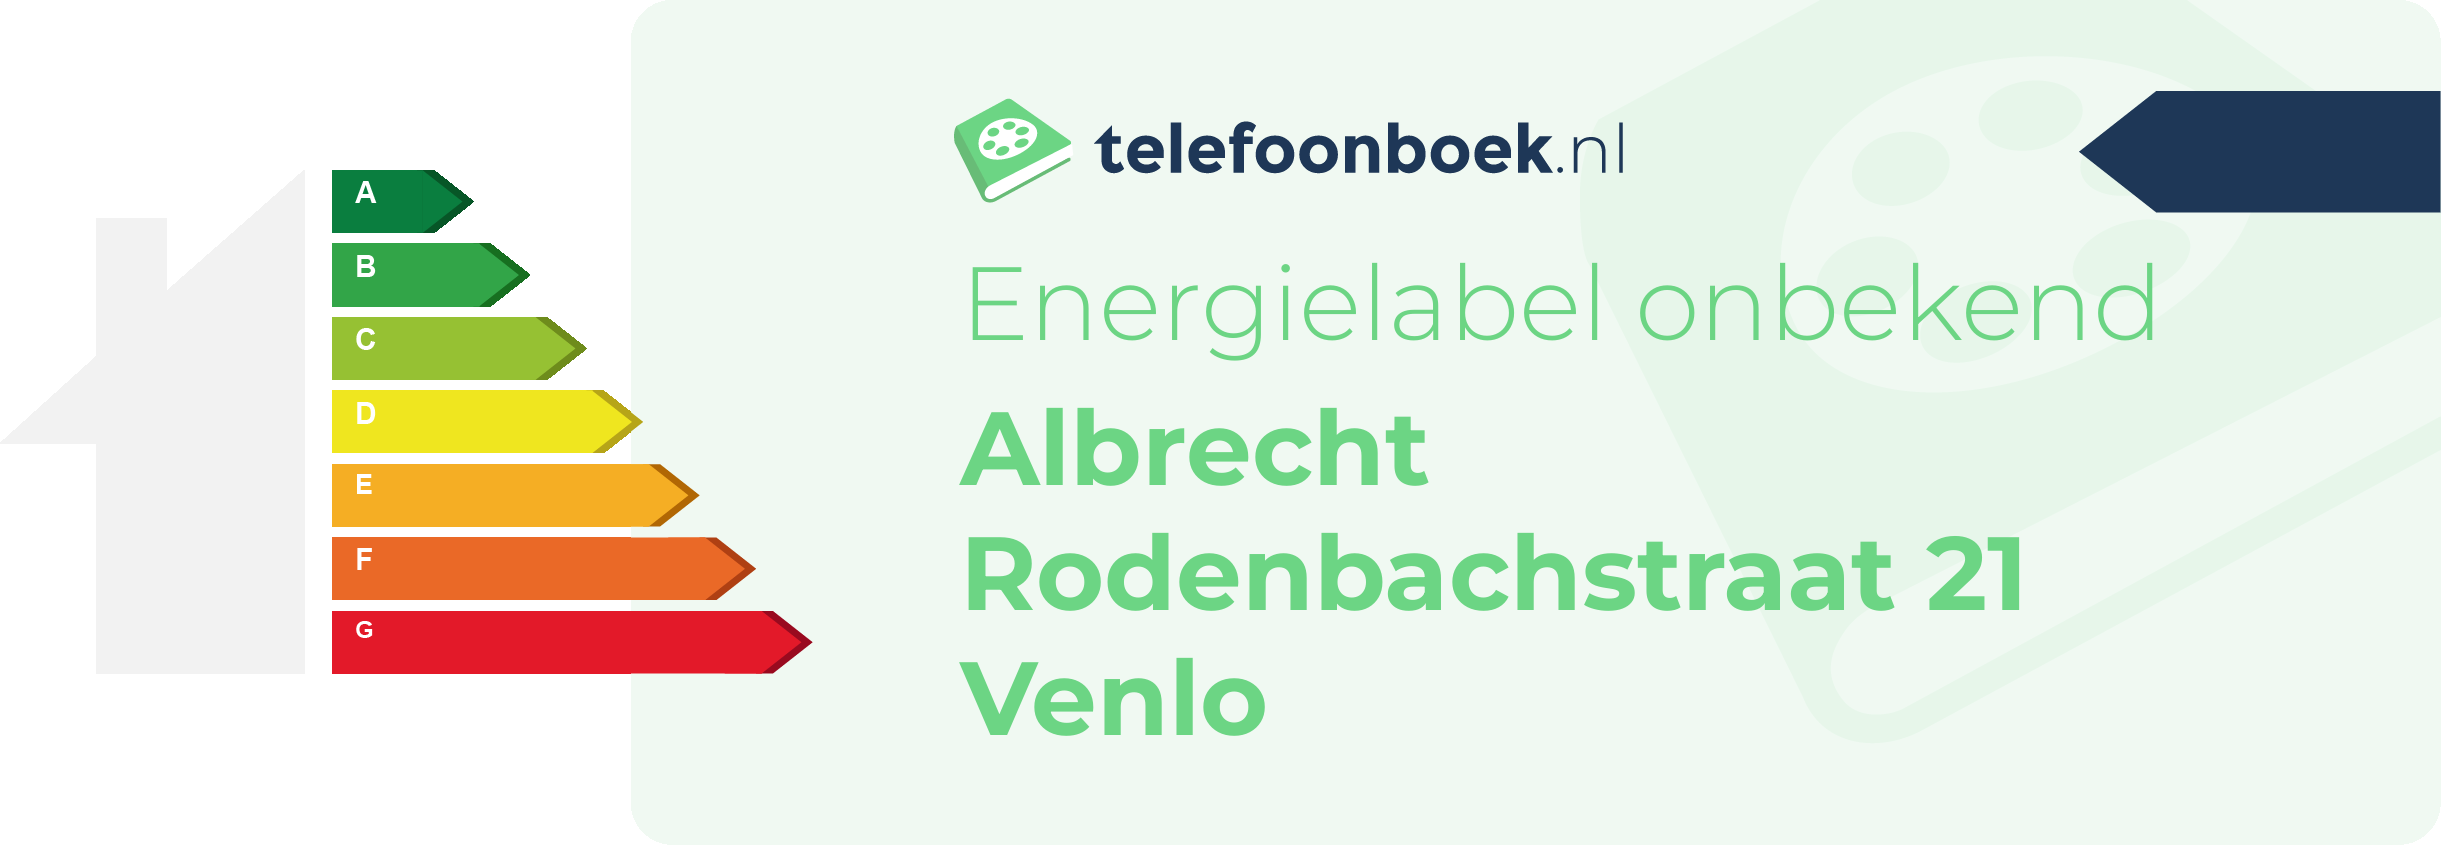 Energielabel Albrecht Rodenbachstraat 21 Venlo